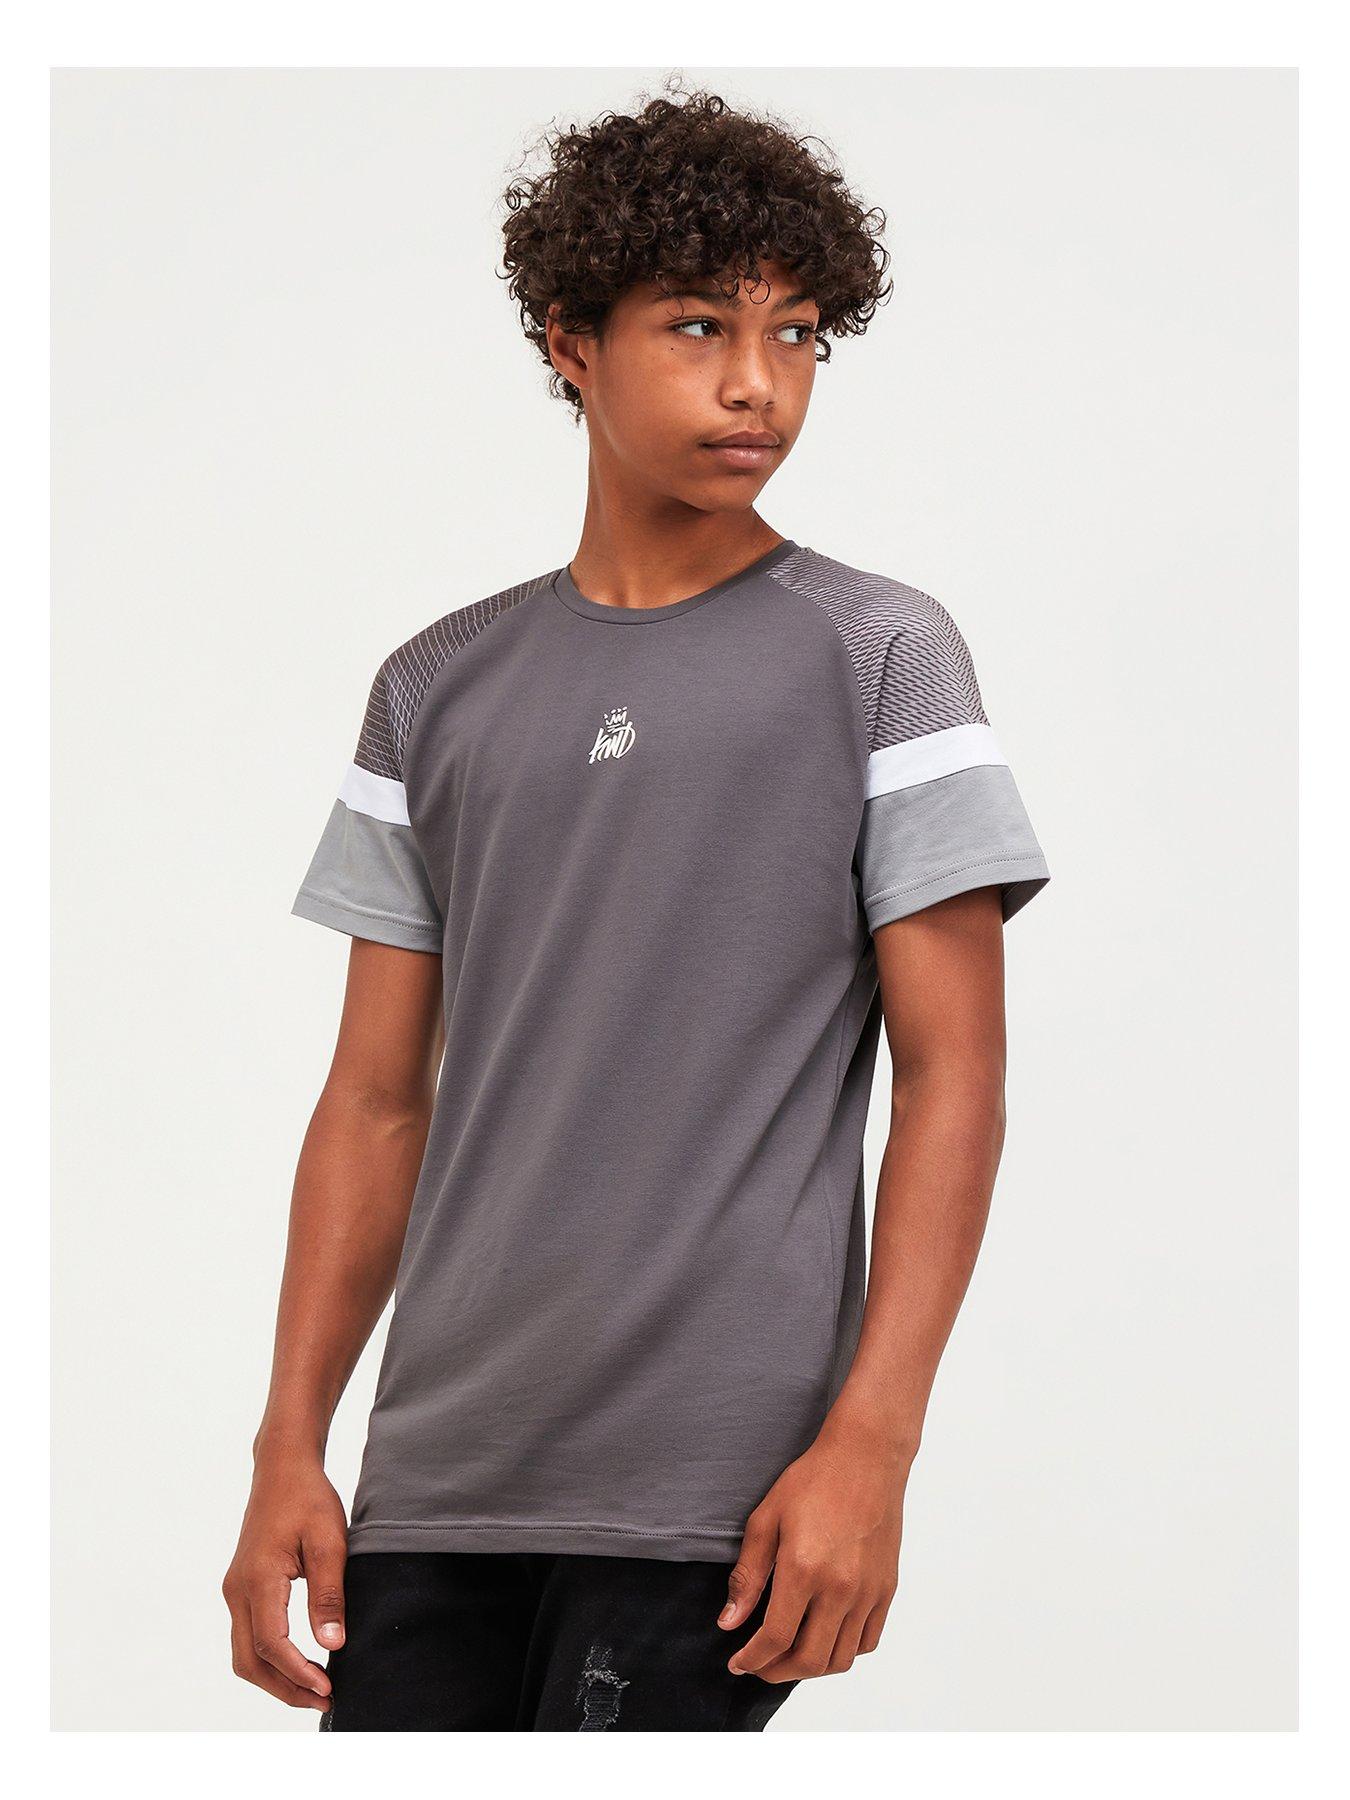  Junior Linus T-Shirt - Grey/White